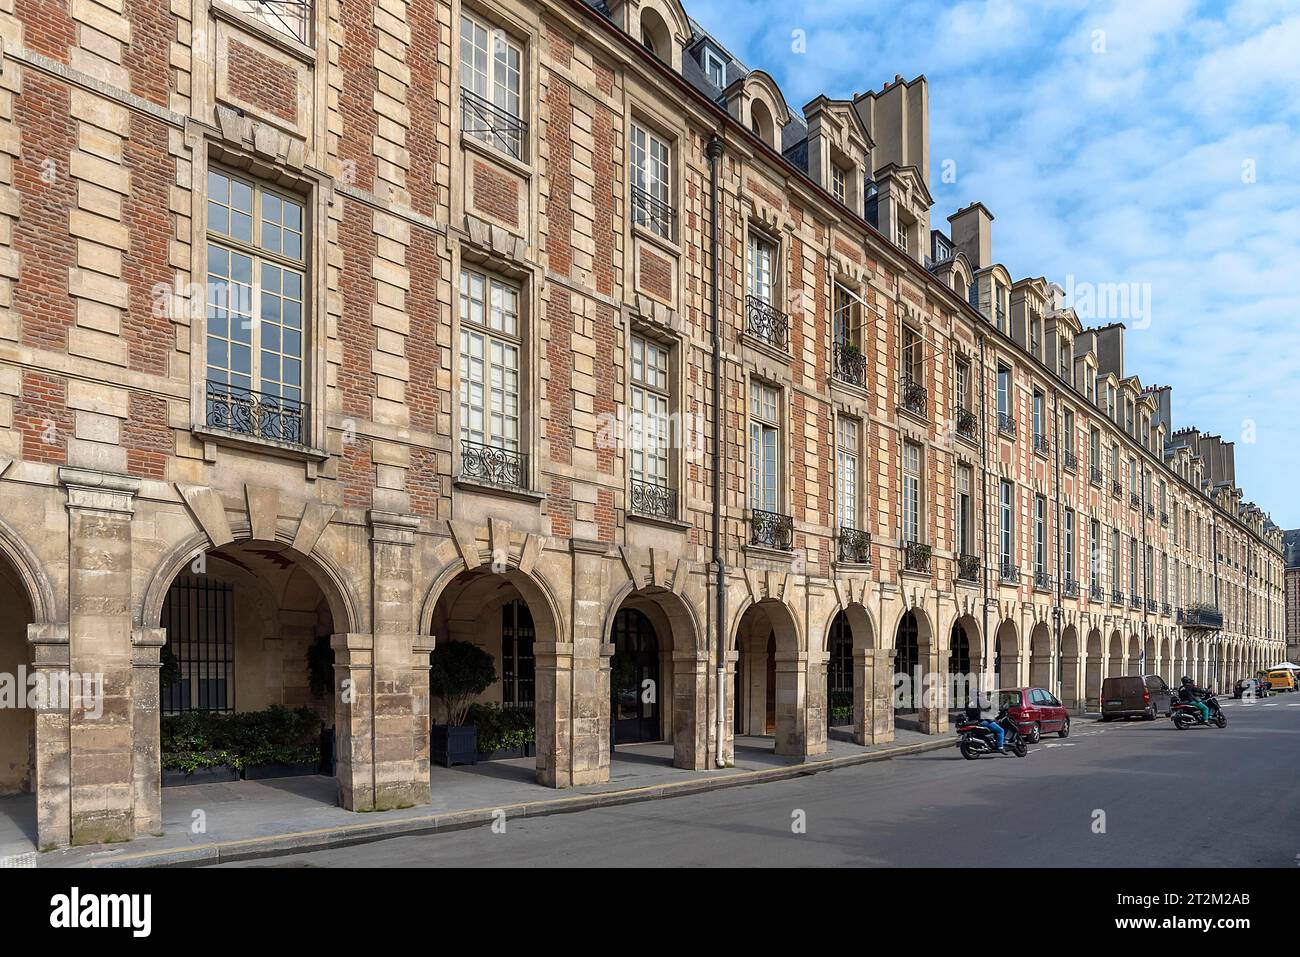 Historic facade at Place des Vosges, Marais district, Paris, France Stock Photo